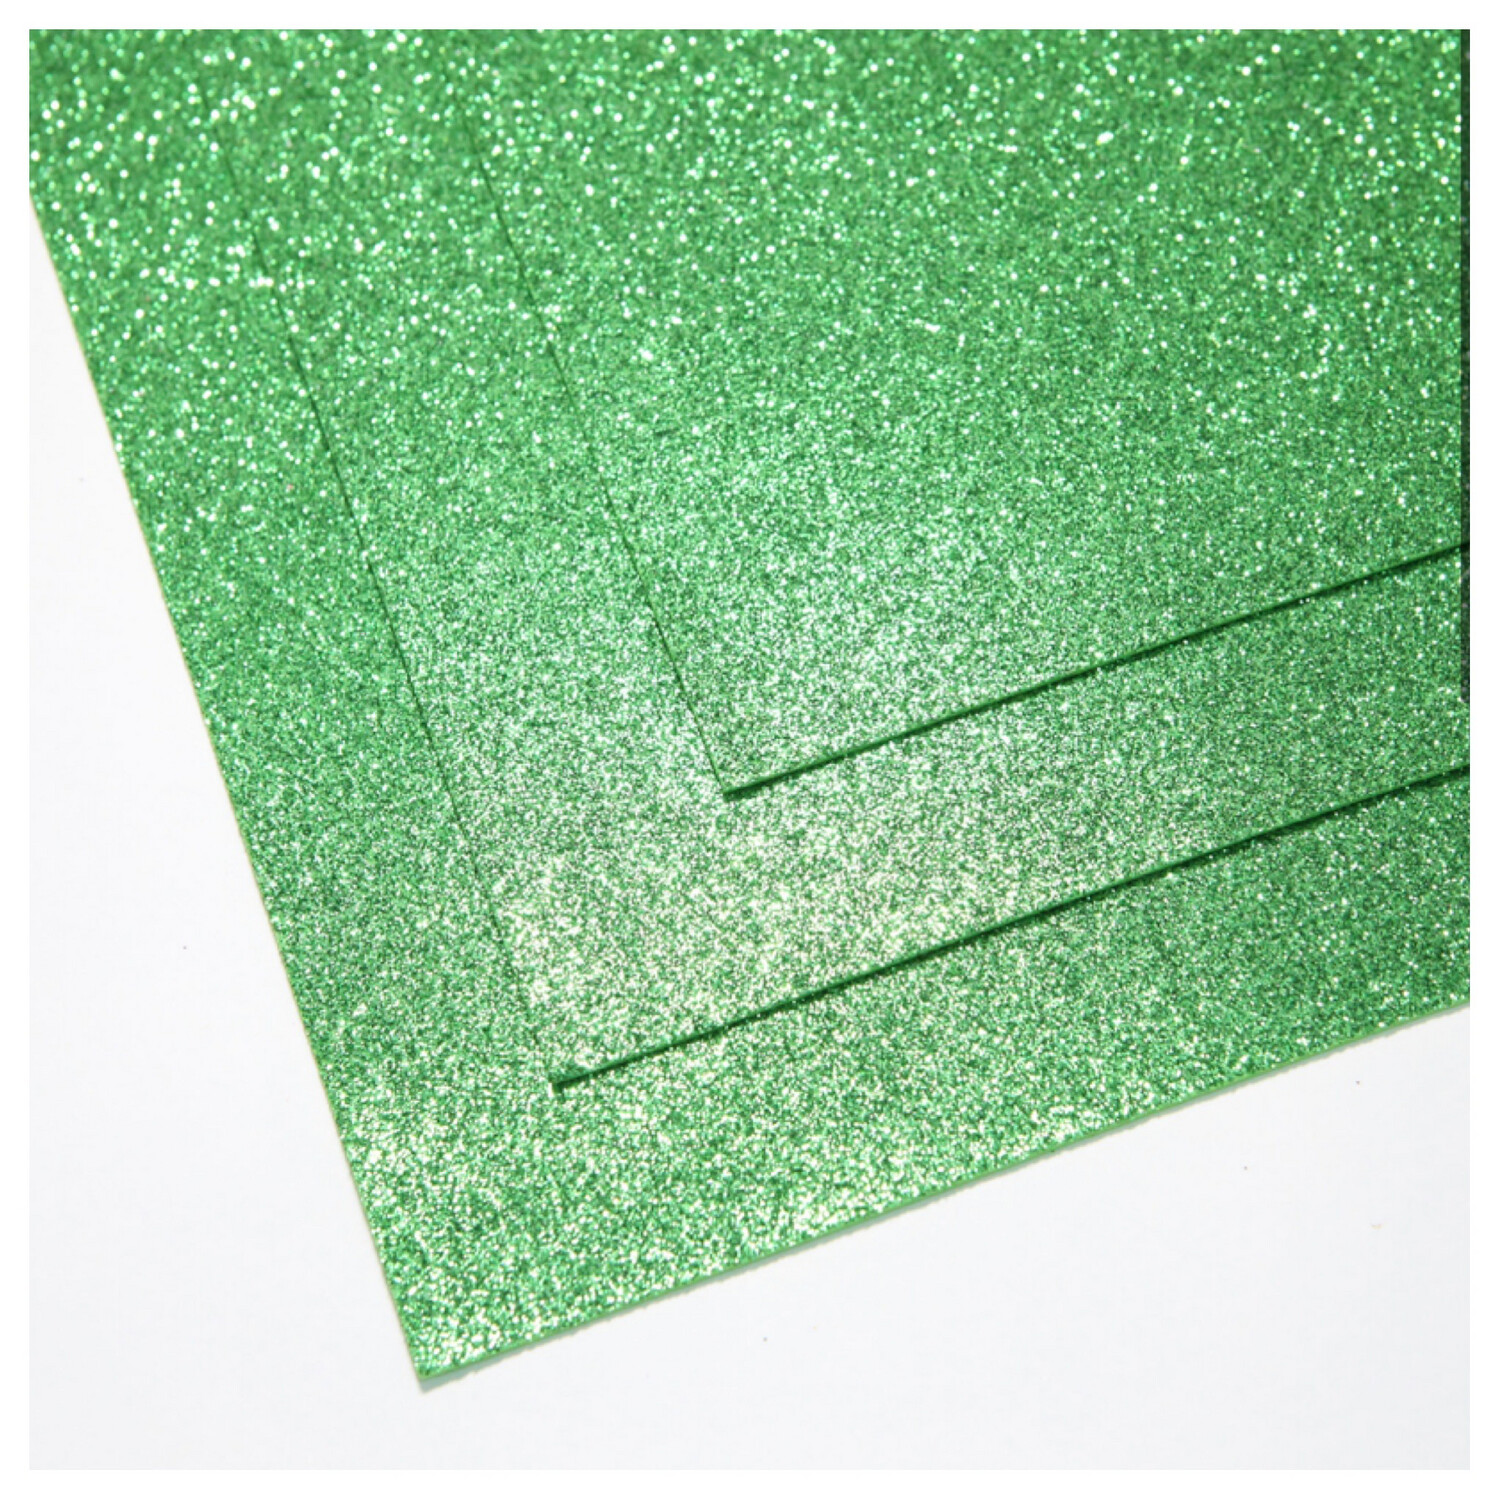 Фоамиран глиттерный - толщина 1,5 мм , размер листа 60/70 см.
Цвет - светло-зелёный